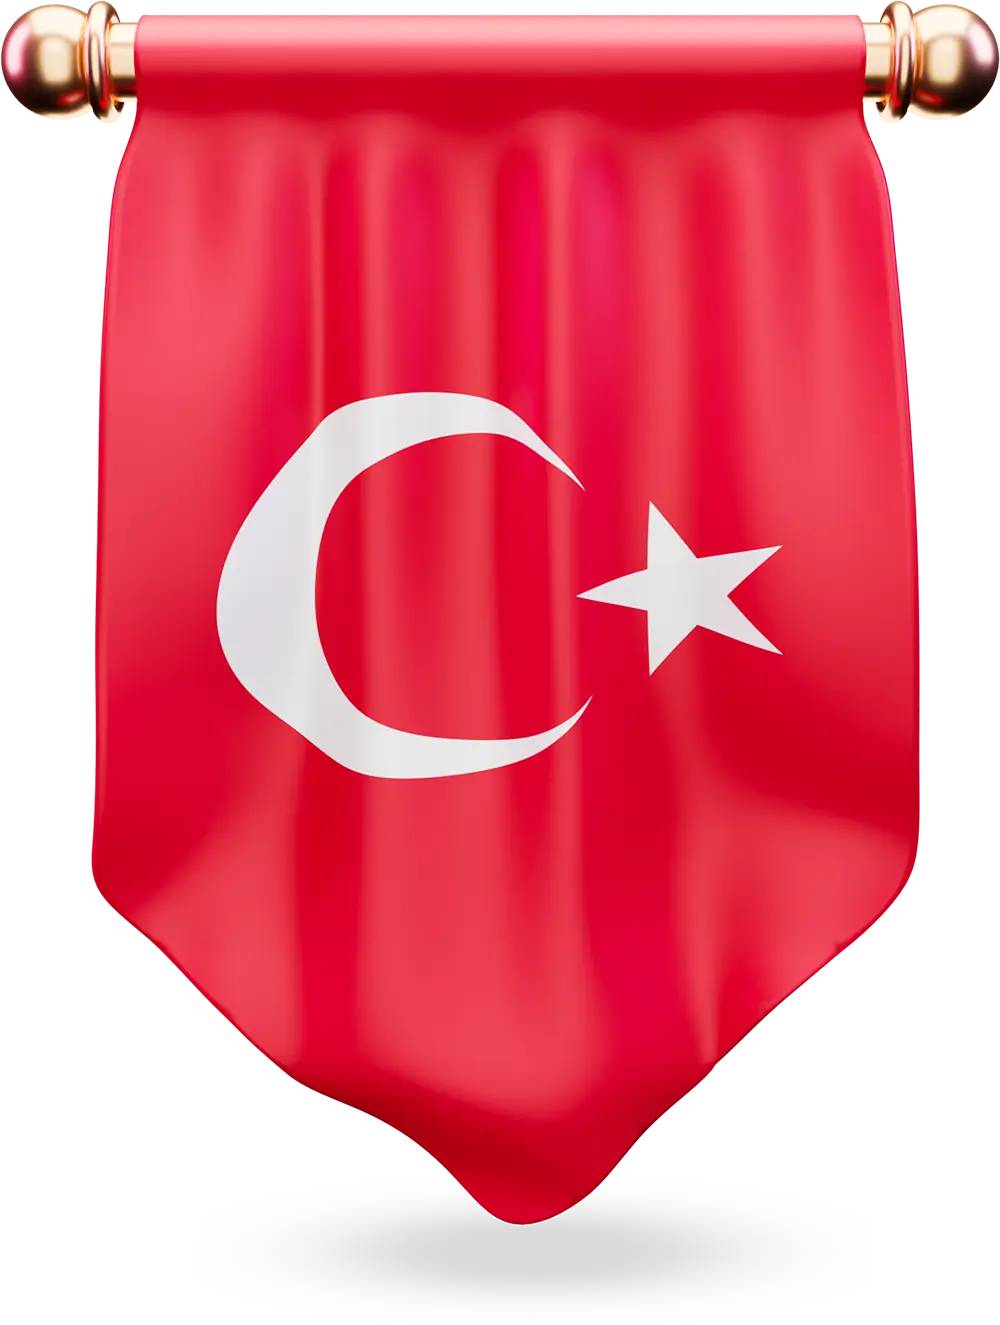 کپی پرچم تابعیت ترکیه با سرمایه گذاری